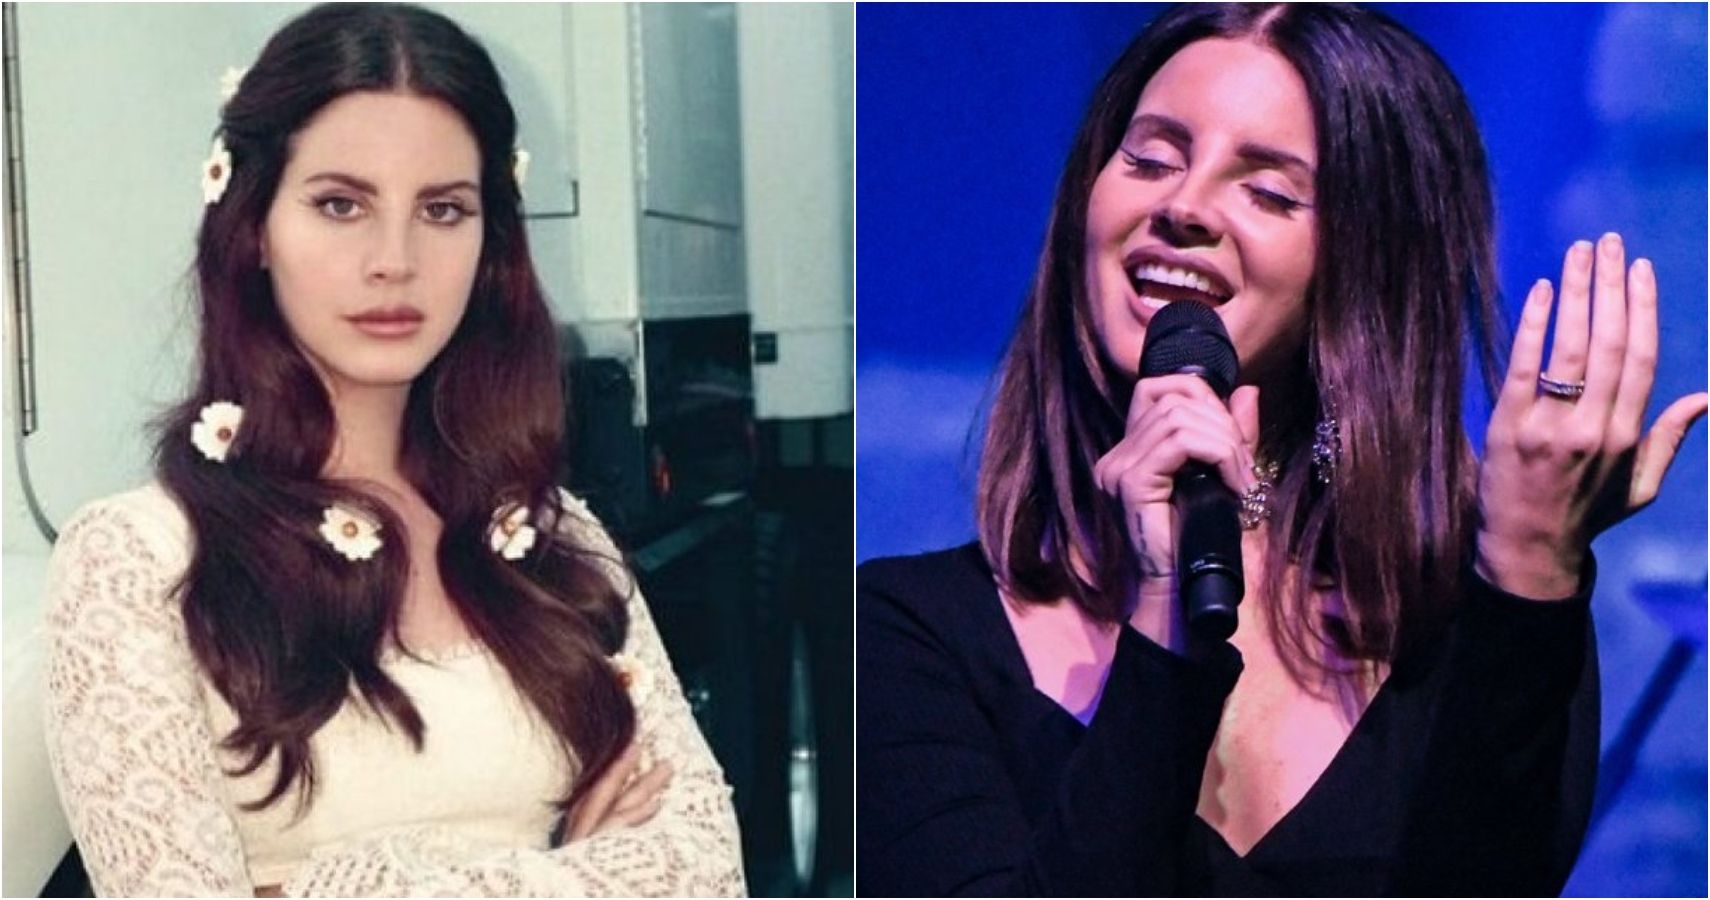 10 coisas que os fãs não sabiam sobre Lana Del Rey